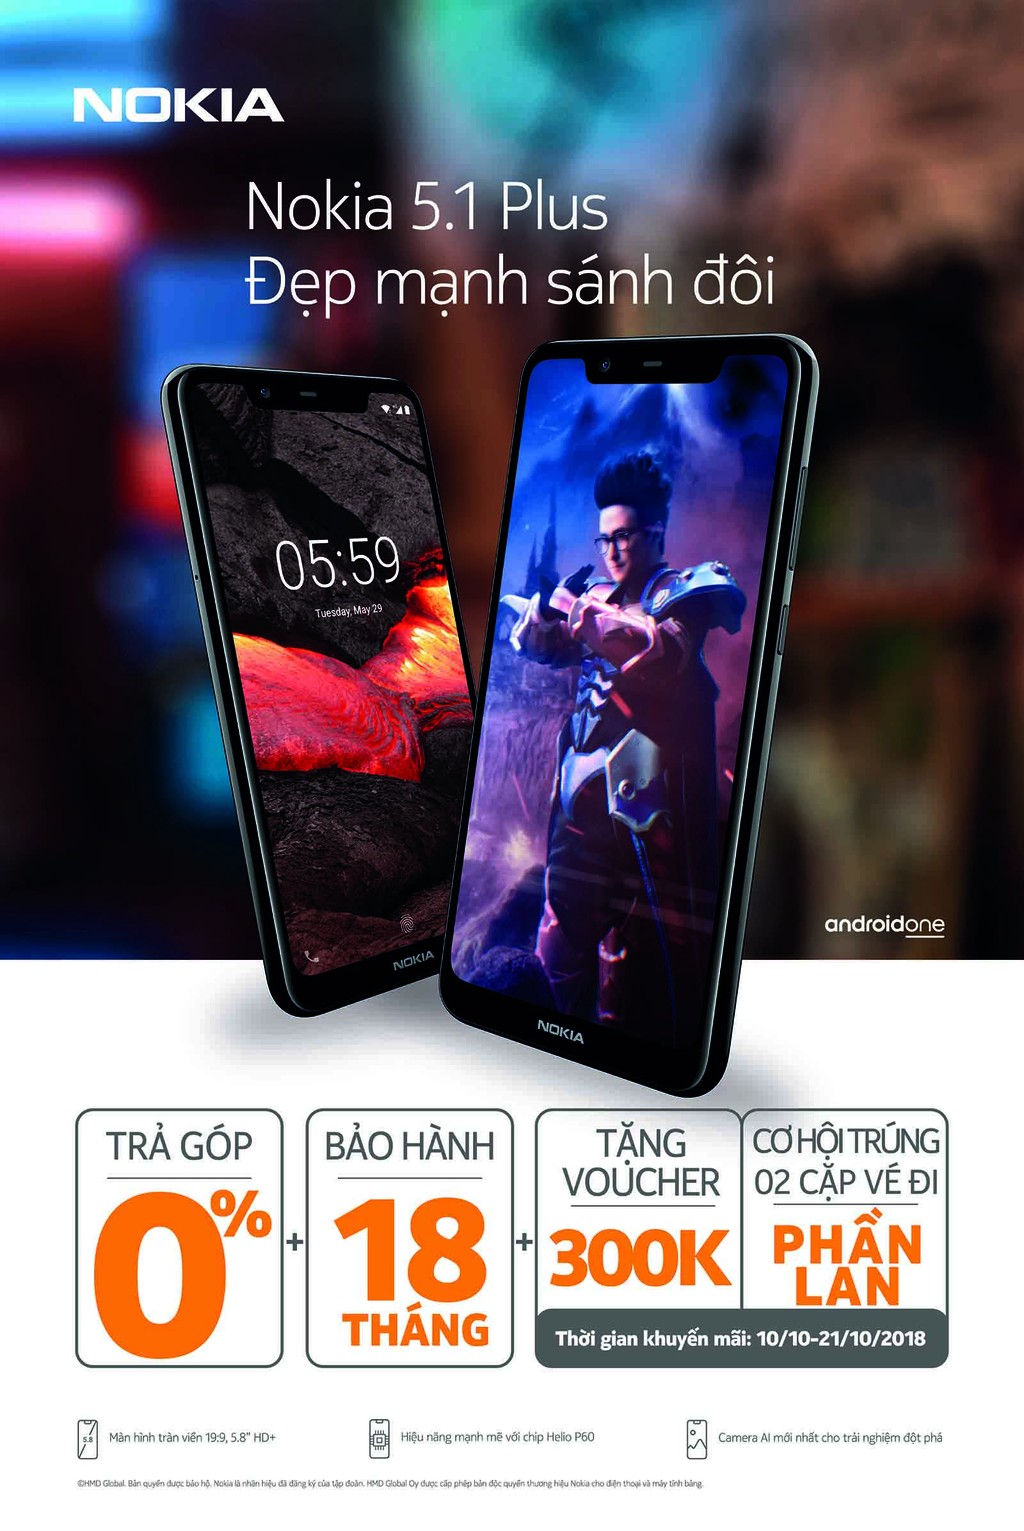 Nokia 5.1 Plus chính thức lên kệ thị trường Việt giá 4.790.000 VND ảnh 2